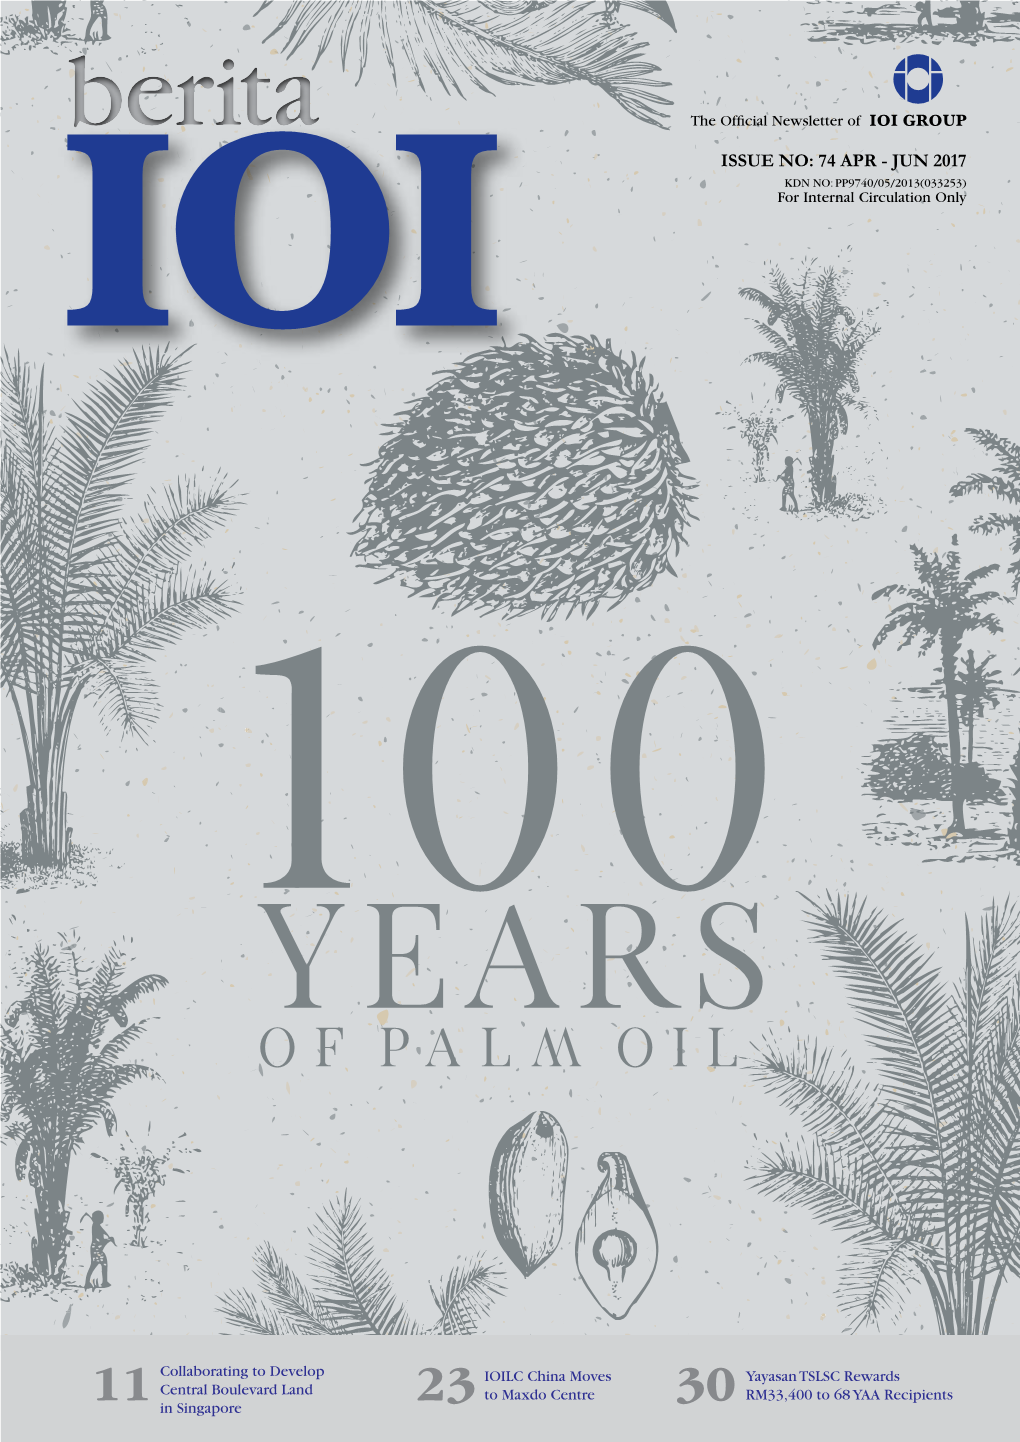 BERITAIOI BERITAIOI 03 COVER FEATURE EDIBLE OILS 04 100 Years of Palm Oil EDITOR’S NOTE